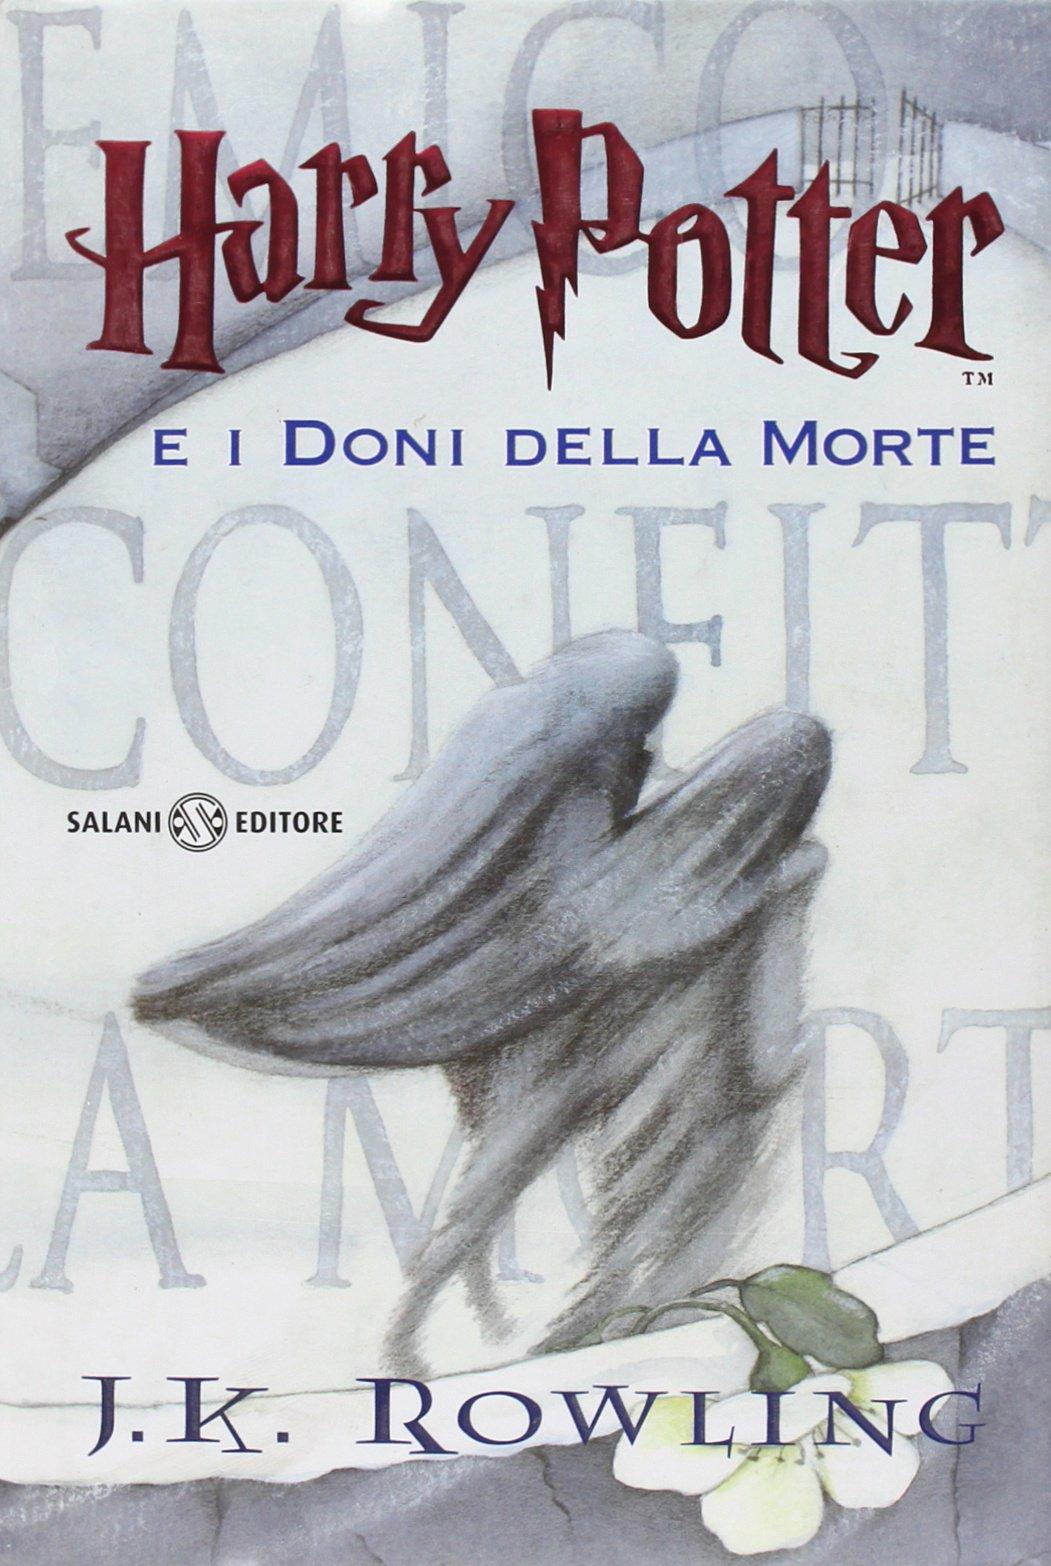 More about Harry Potter e i doni della morte